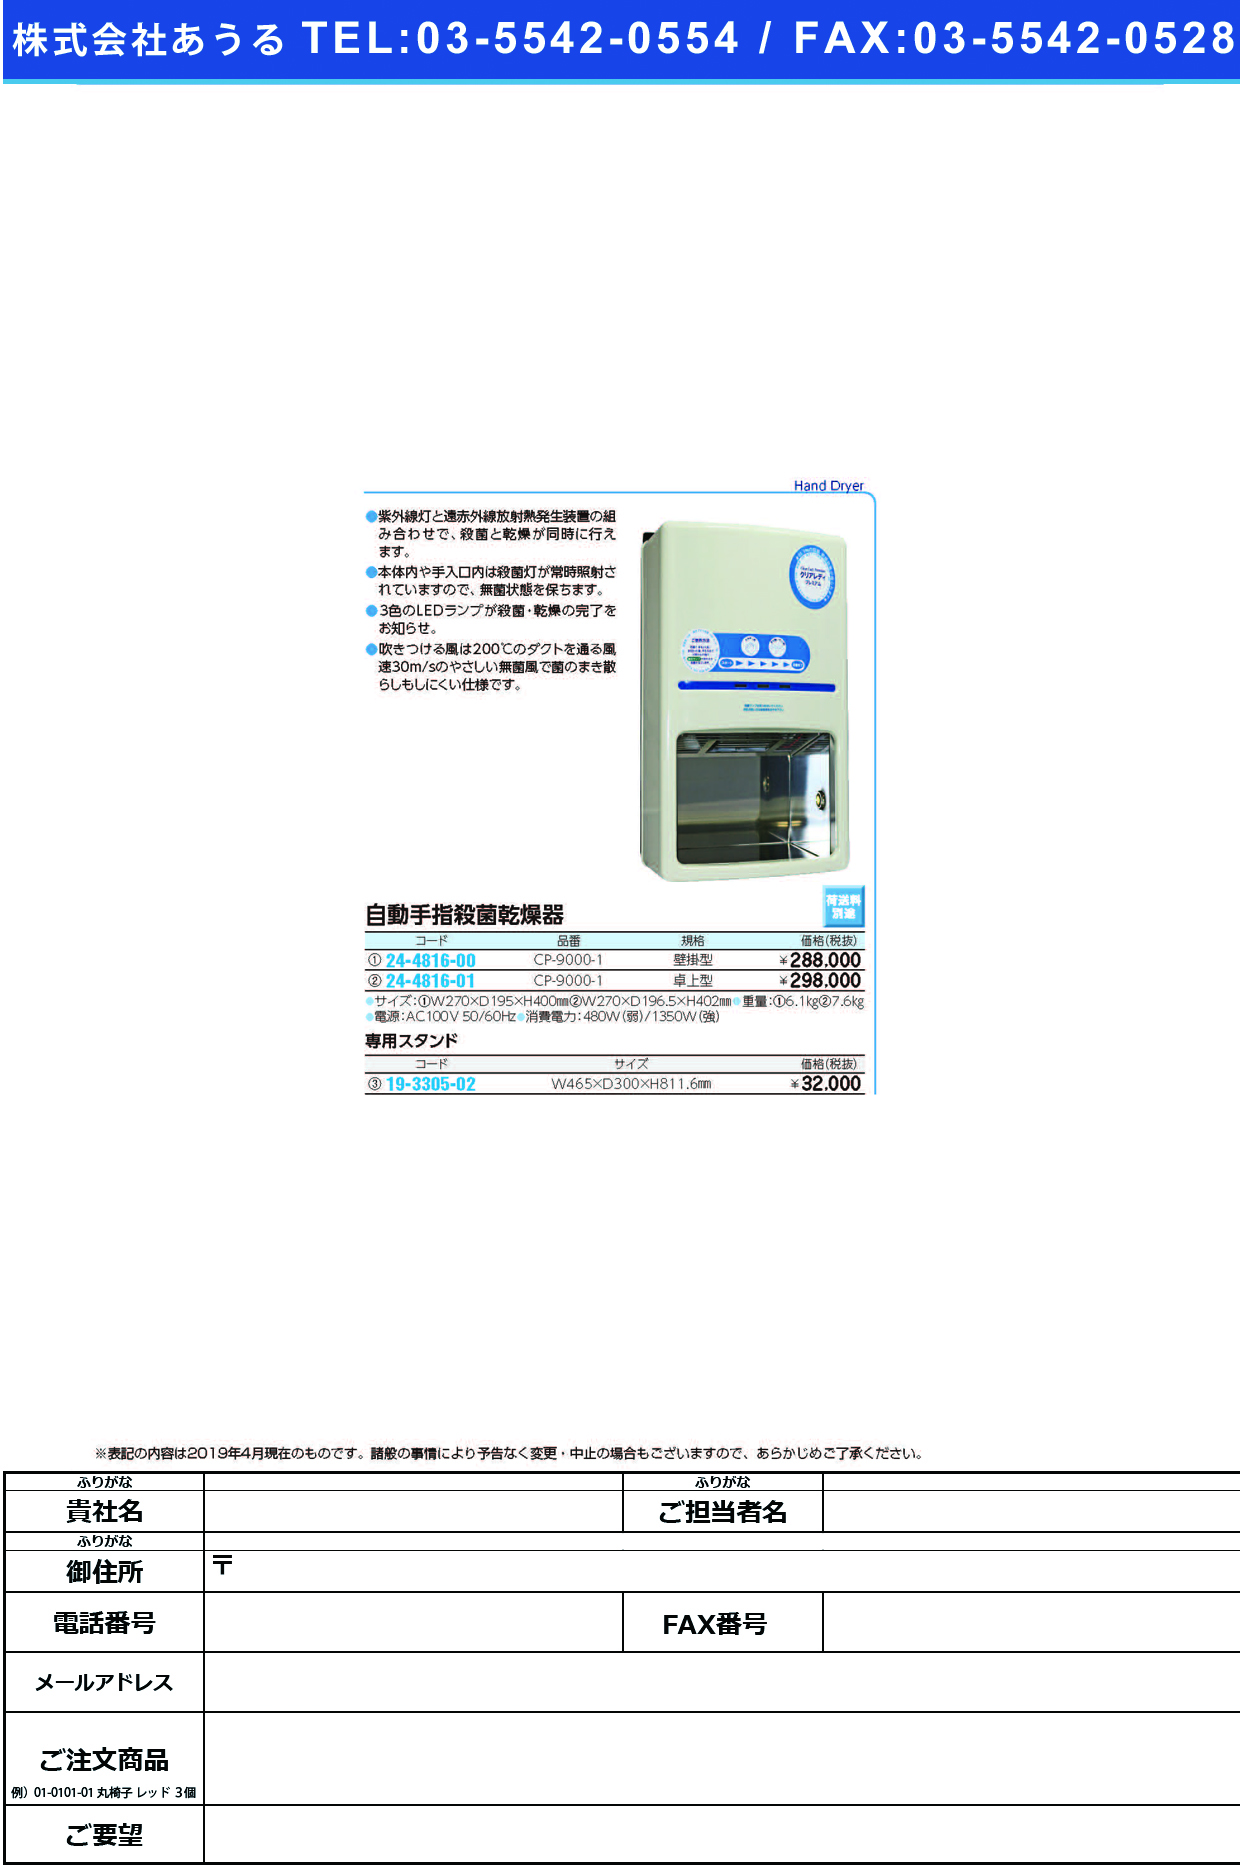 (24-4816-00)自動手指殺菌乾燥器（壁掛型） CP-9000-1 ｼｭｼｻｯｷﾝｼｮｳﾄﾞｸｷｶﾍﾞｶｹ【1台単位】【2019年カタログ商品】